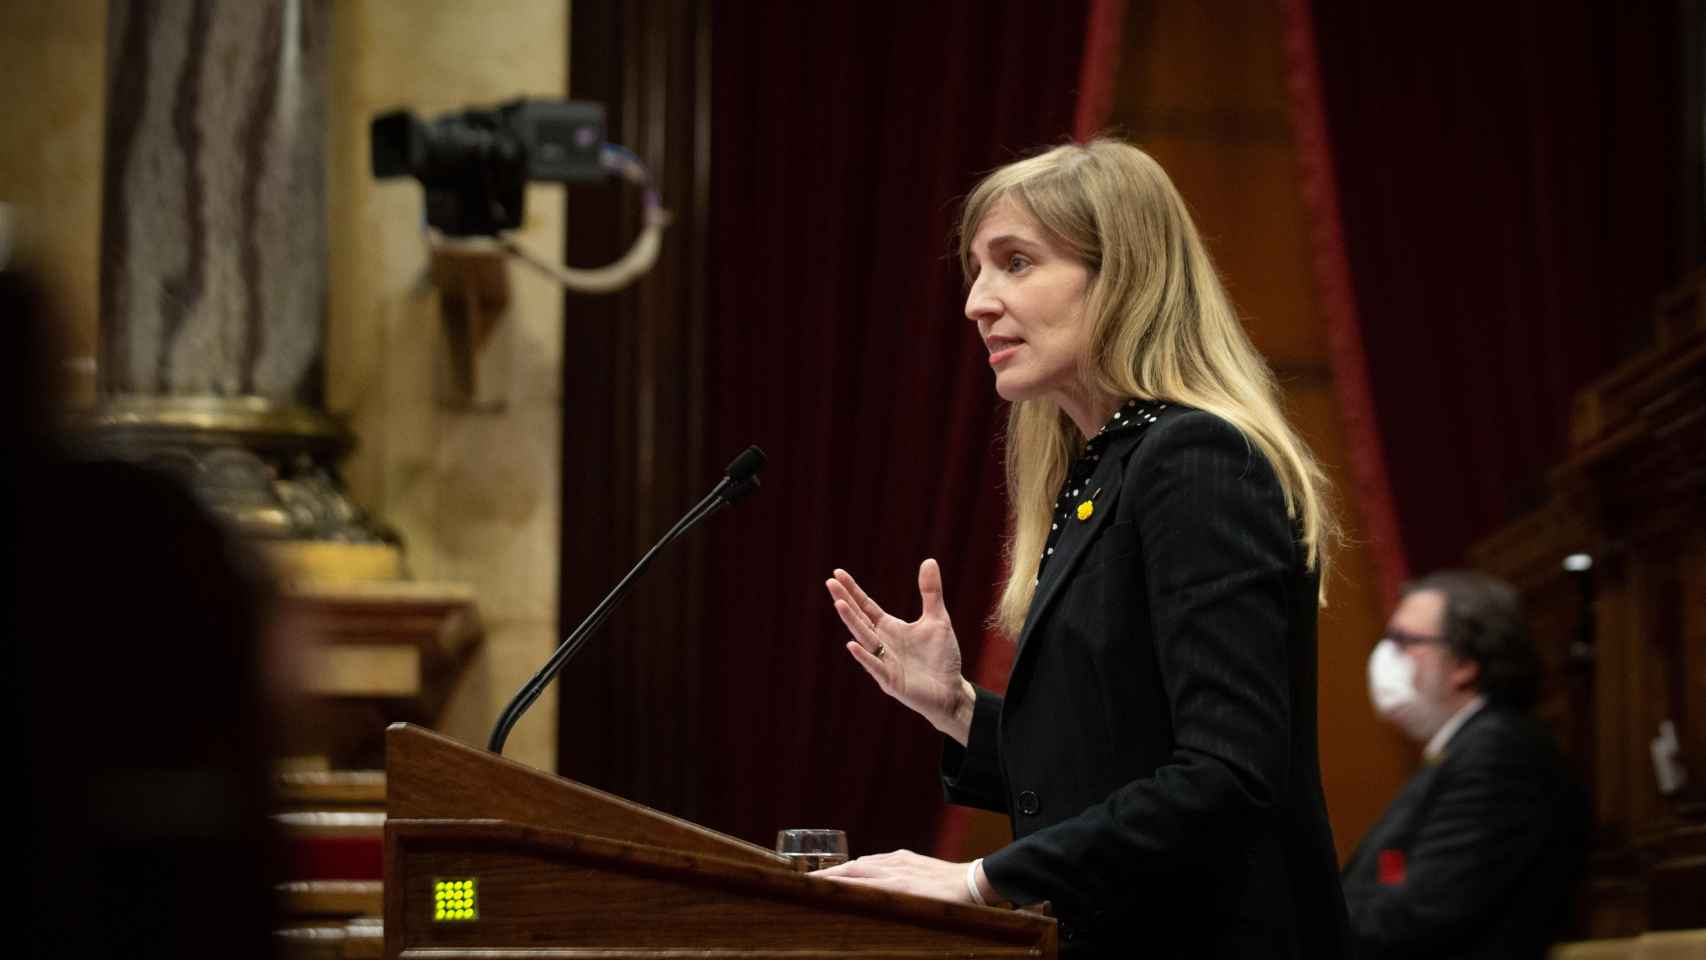 La consellera de Acción Exterior del Govern, Victòria Alsina, denuncia la represión salvaje del Estado español / EP